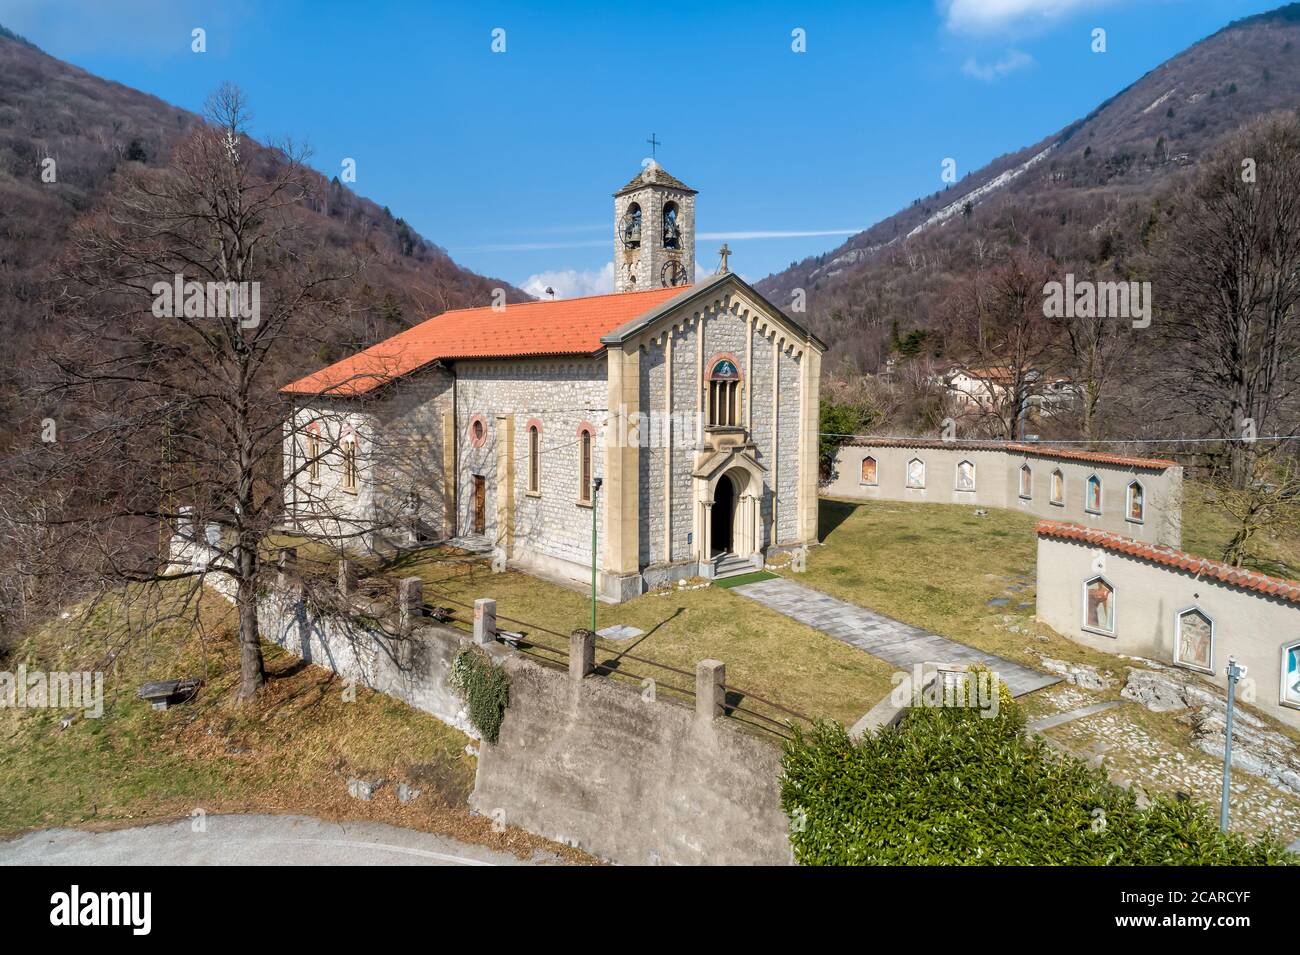 Vue aérienne de l'église Sant Ambrogio située dans le village peint Arcumeggia dans la province de Varèse, Italie Banque D'Images